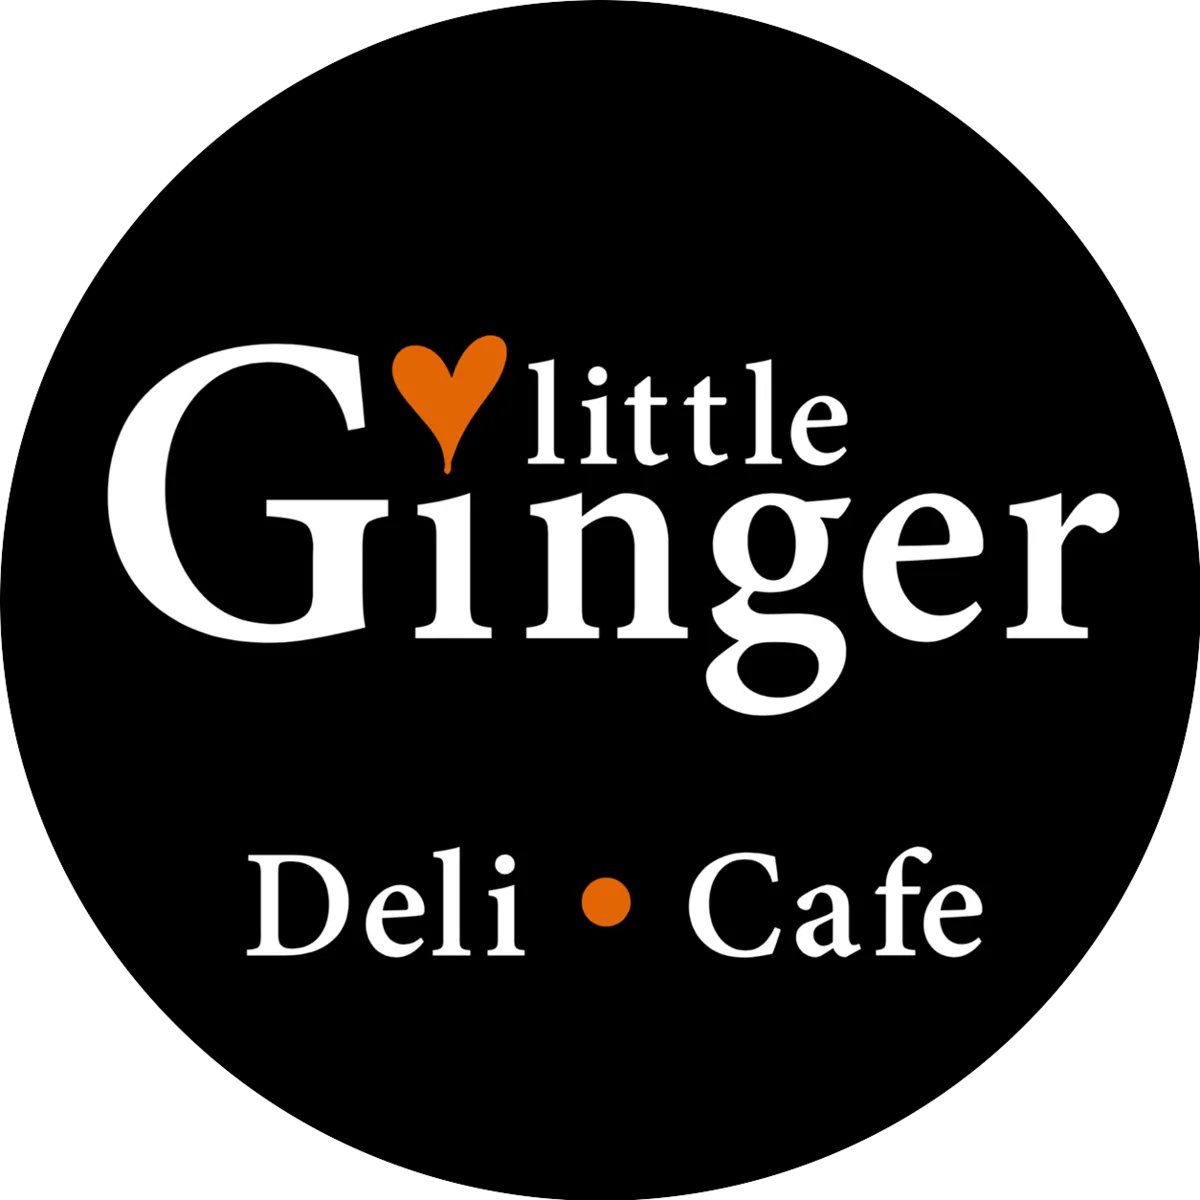 Little Ginger Deli